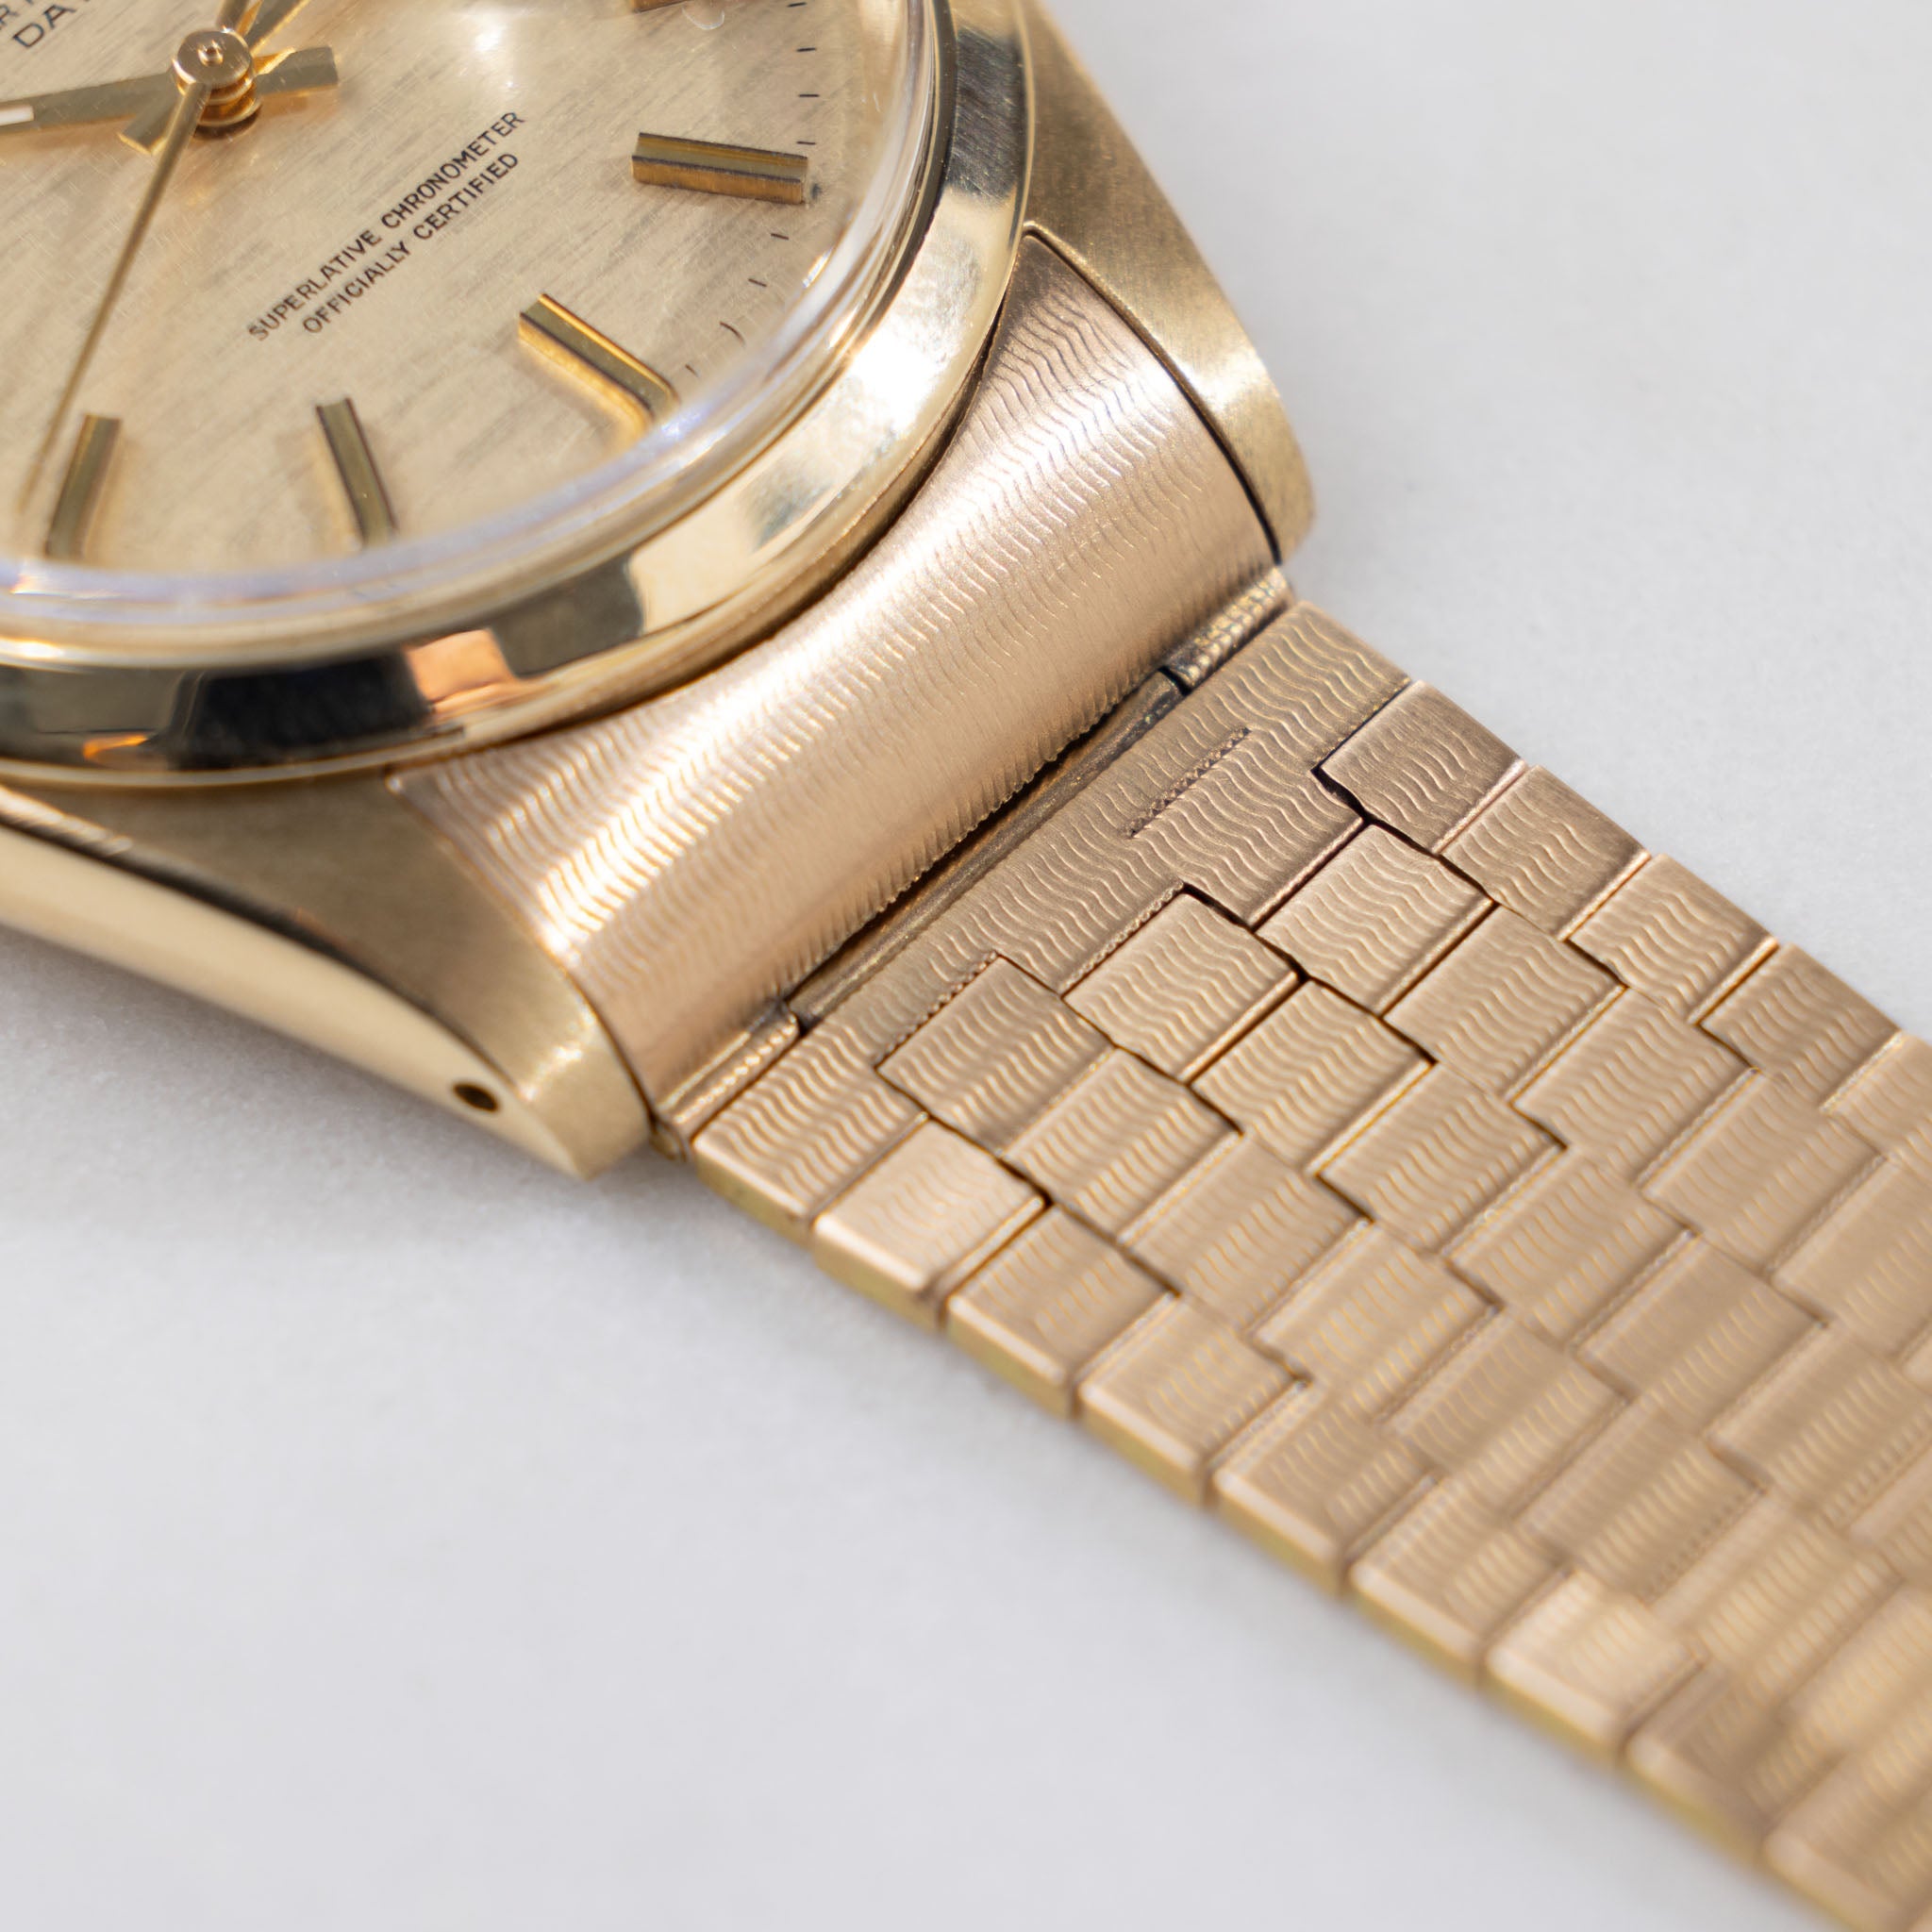 Rolex Date Shantung Dial 14kt Yellow Gold ‘Brick’ Bracelet Ref 1500